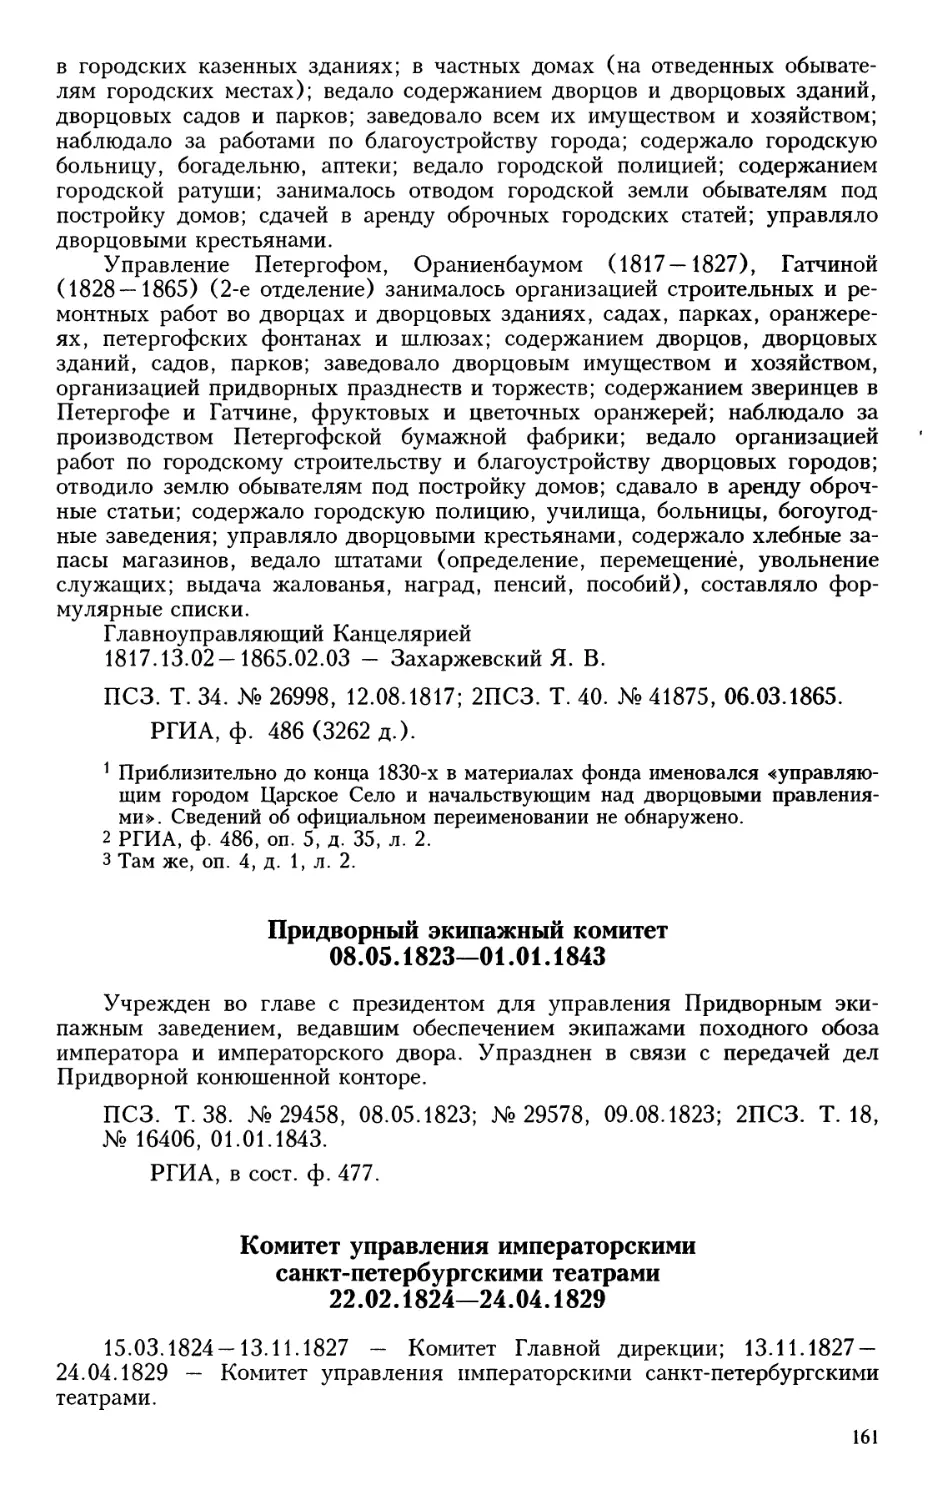 Придворный экипажный комитет
Комитет управления императорскими санкт-петербургскими театрами